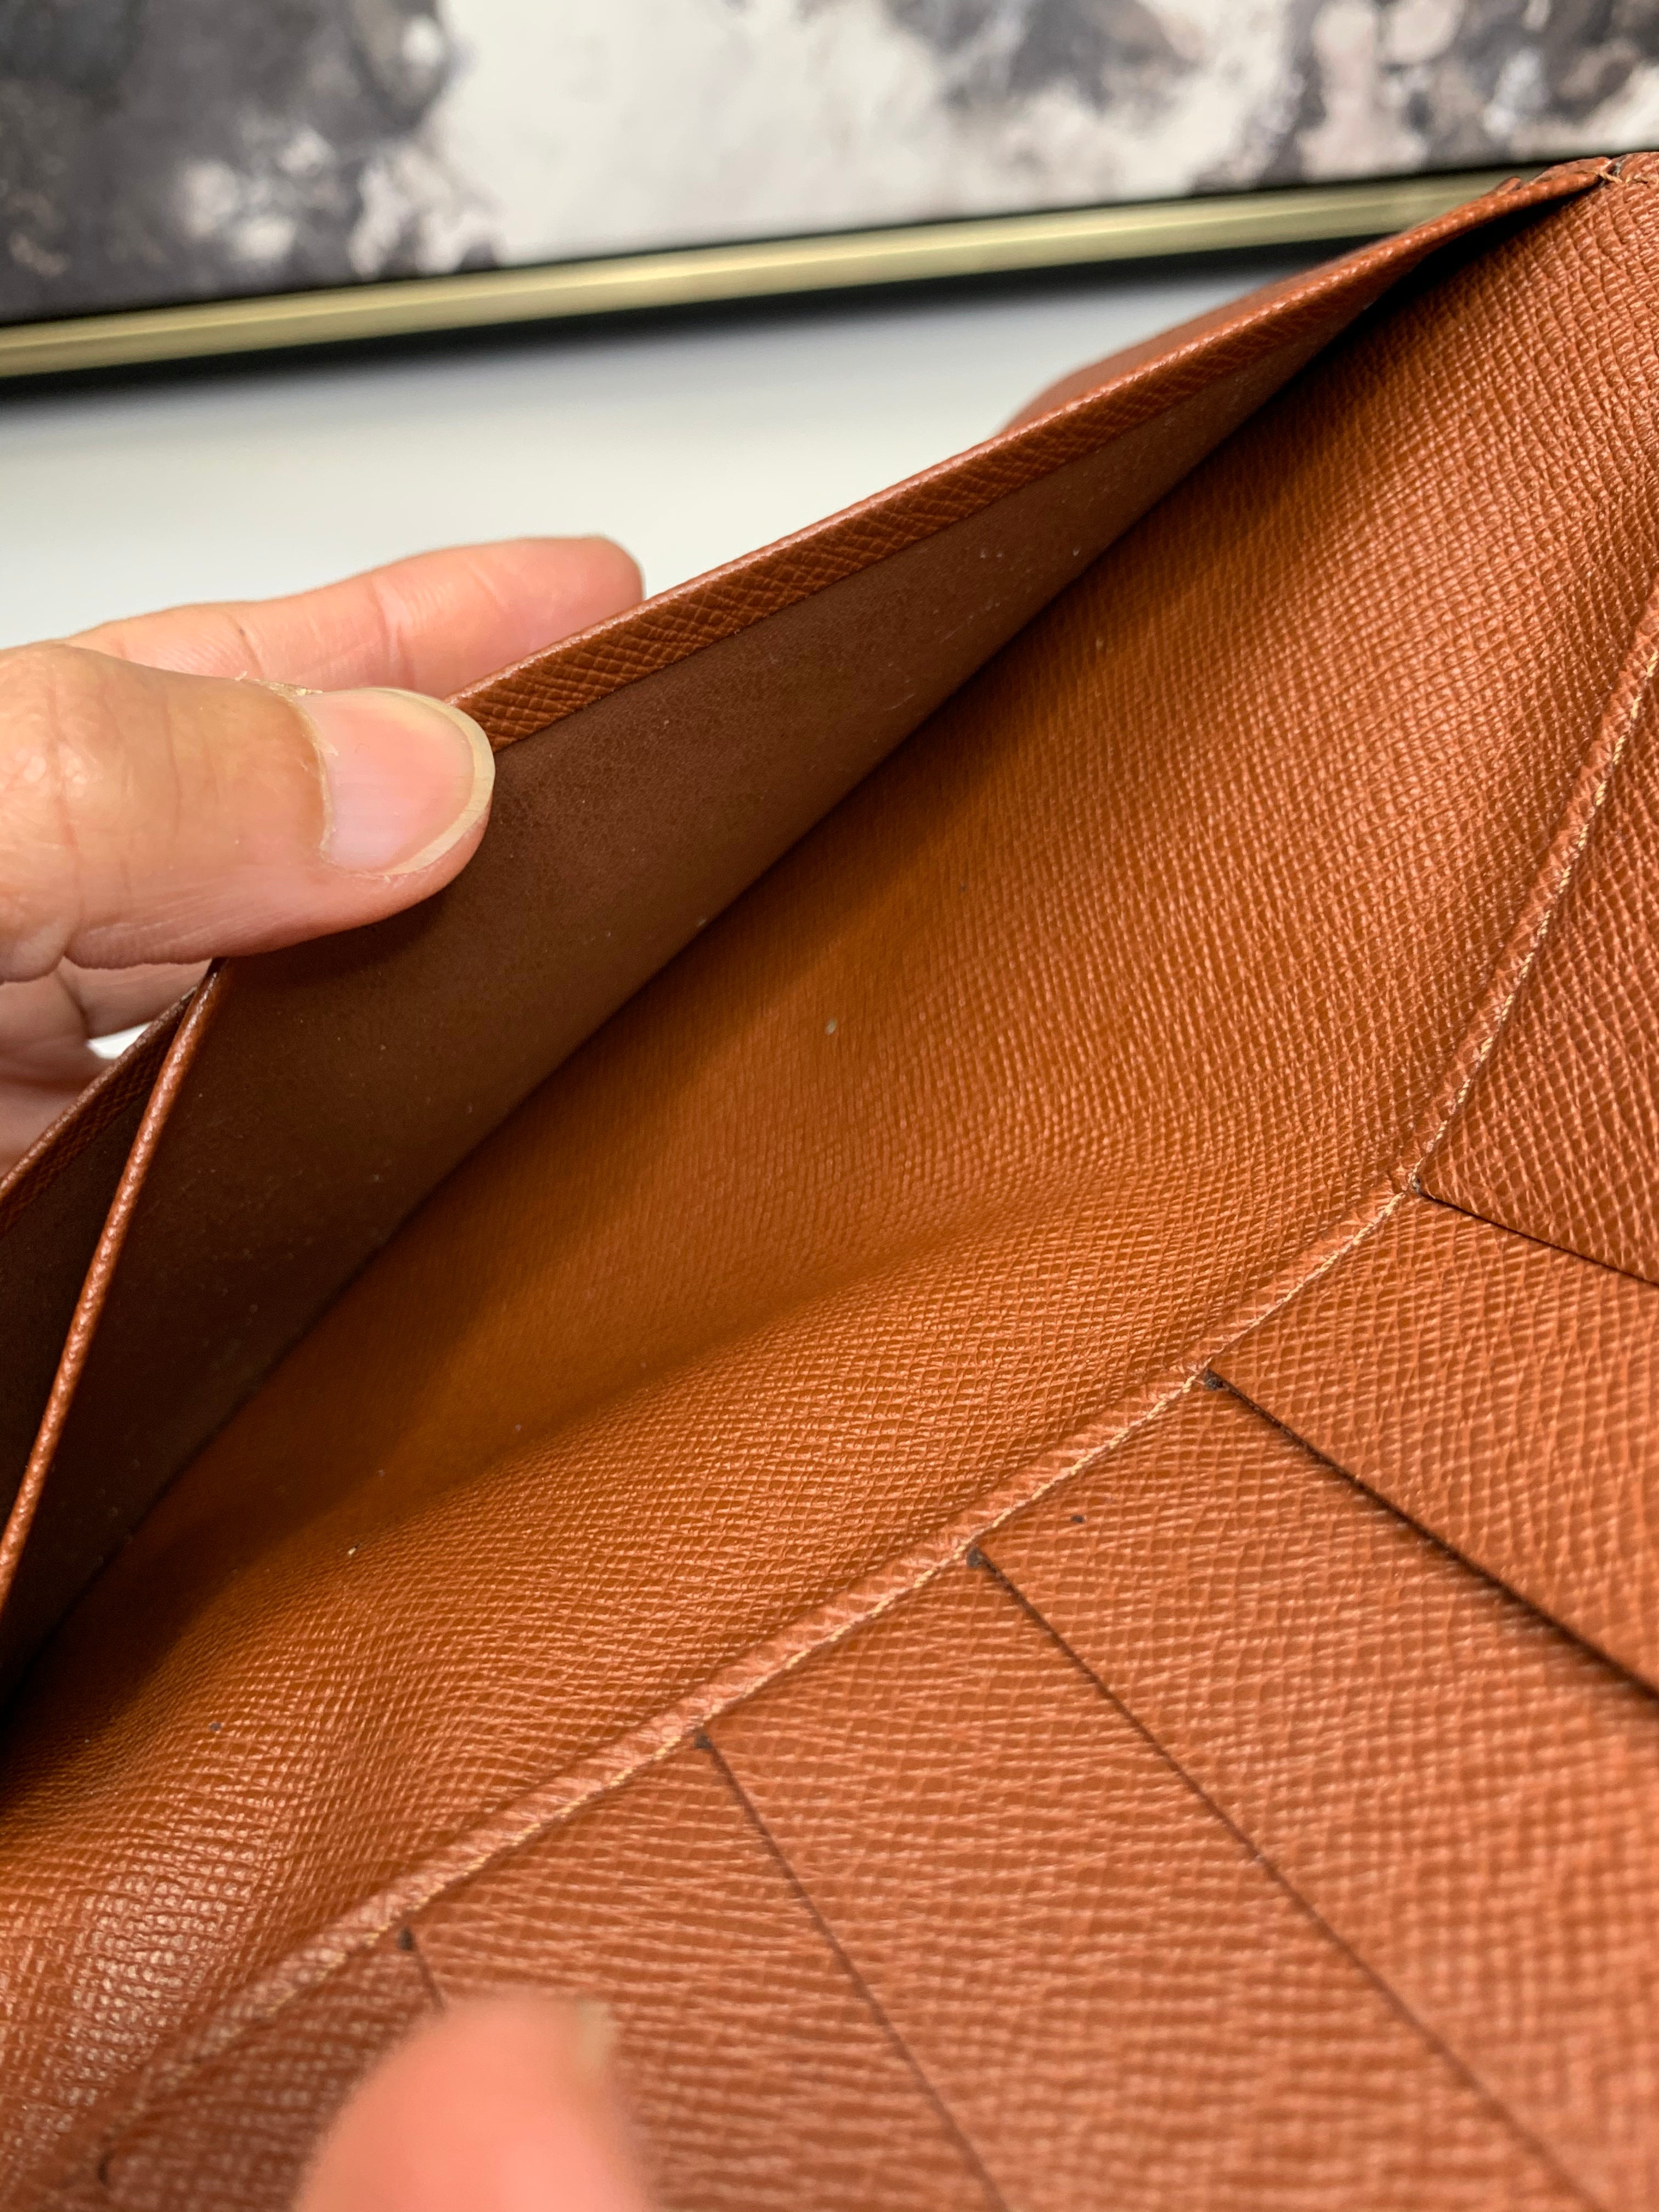 Louis Vuitton Monogram Bifold Card Wallet Checkbook Holder 94lvs427